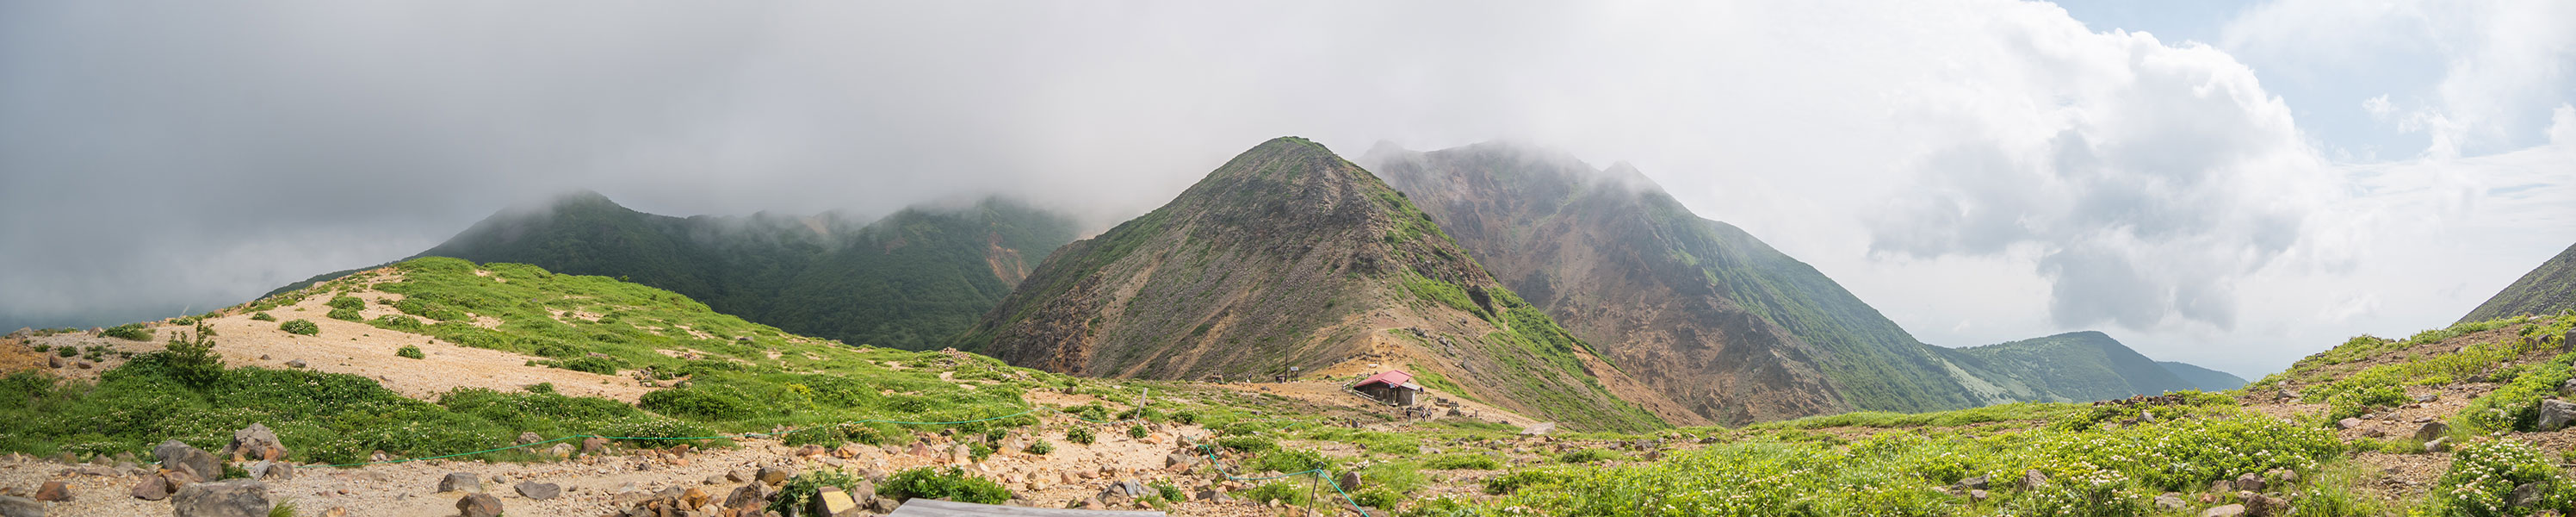 茶臼岳から見下ろす峰の茶屋跡避難小屋